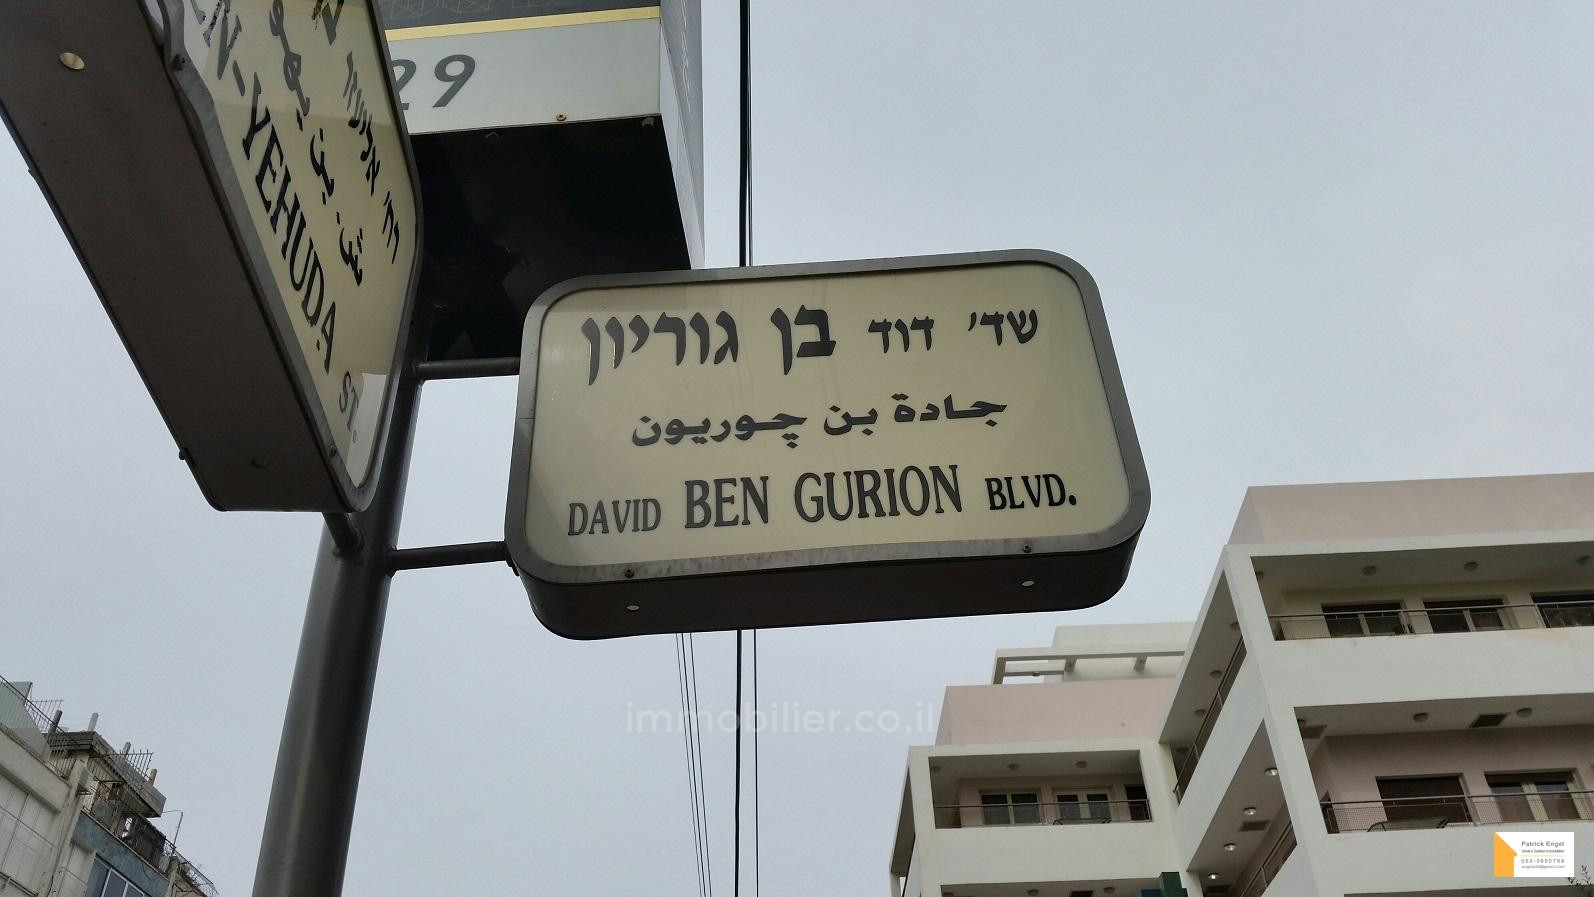 Appartamento 3 vani Tel Aviv quartiere di mare 232-IBL-3620